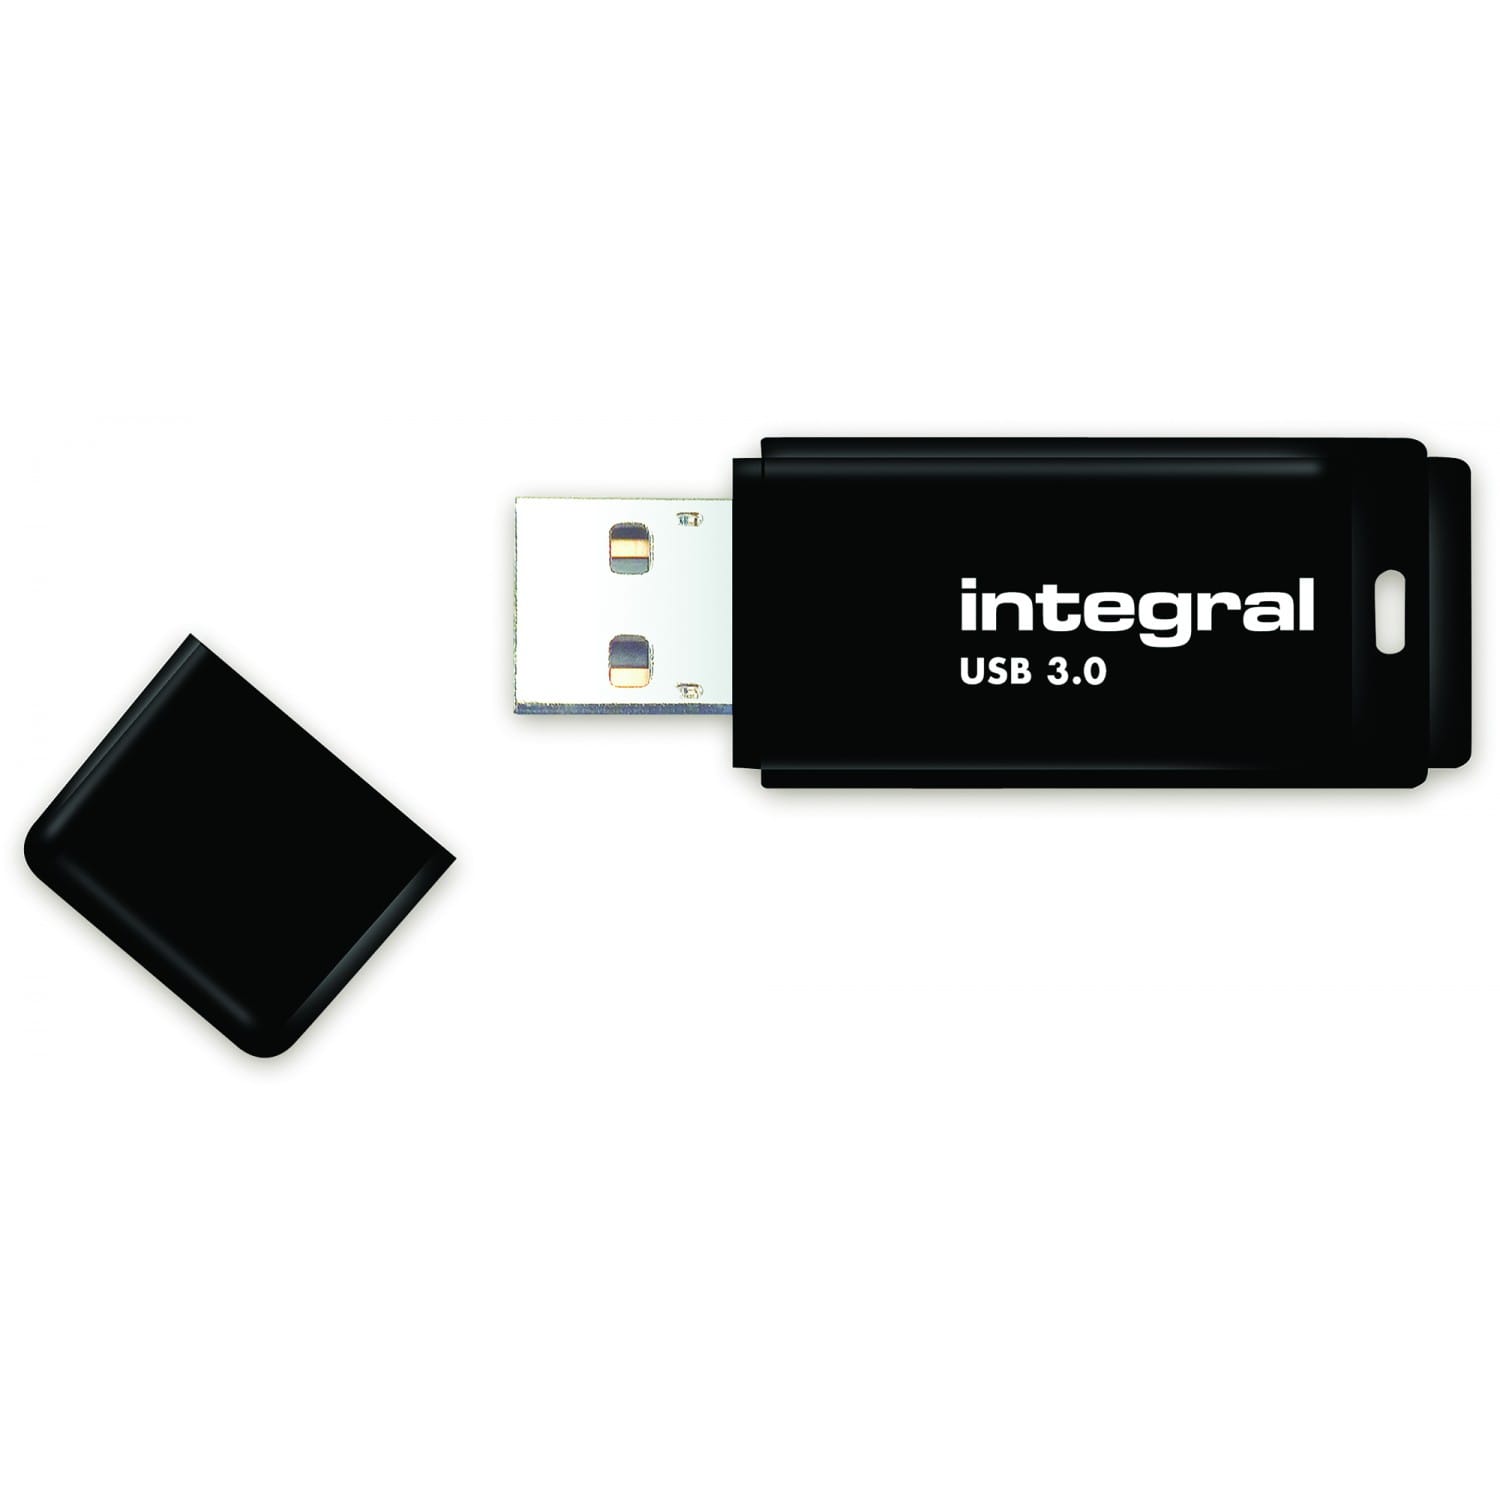 Clé USB 8Go